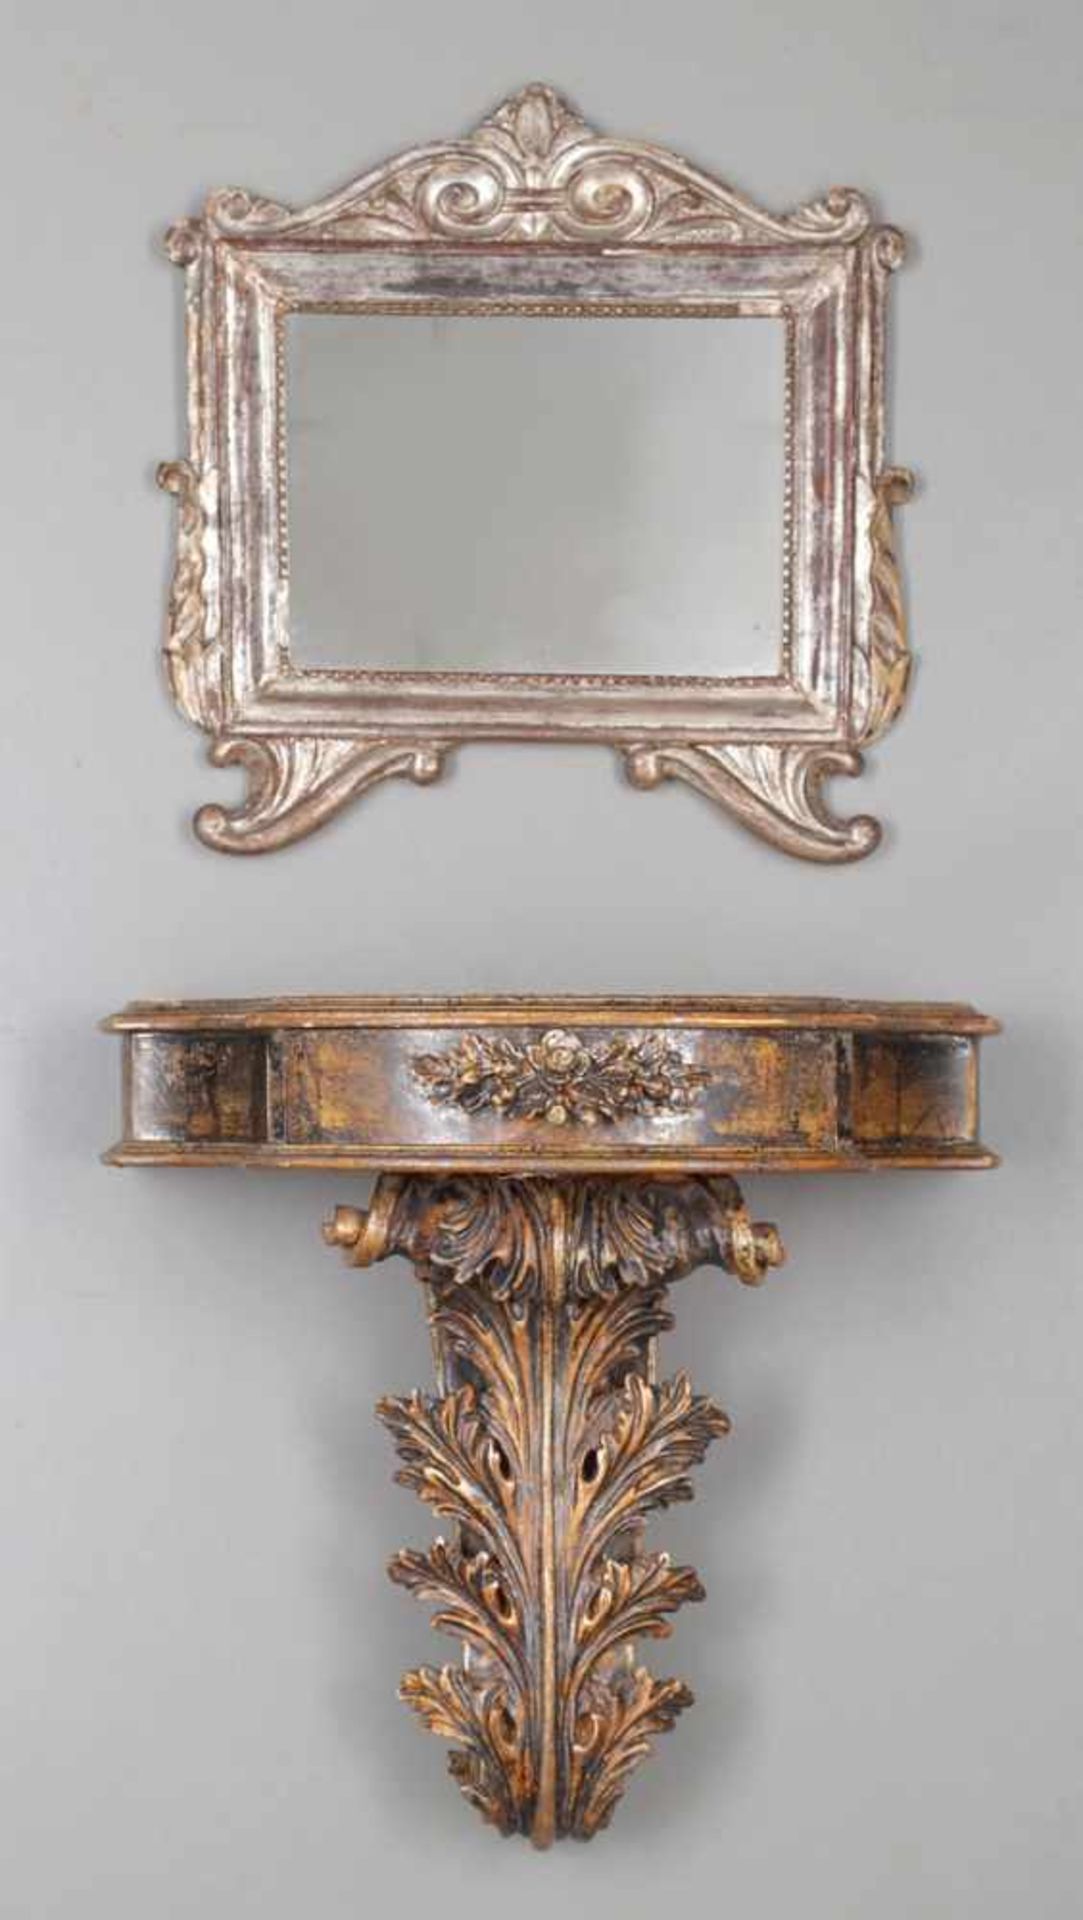 Spiegel mit Konsole im Barock-StilItalien. Holz, gefasst. Best. 1 Spiegel 52 x 50 cm. 1 Konsole 54 x